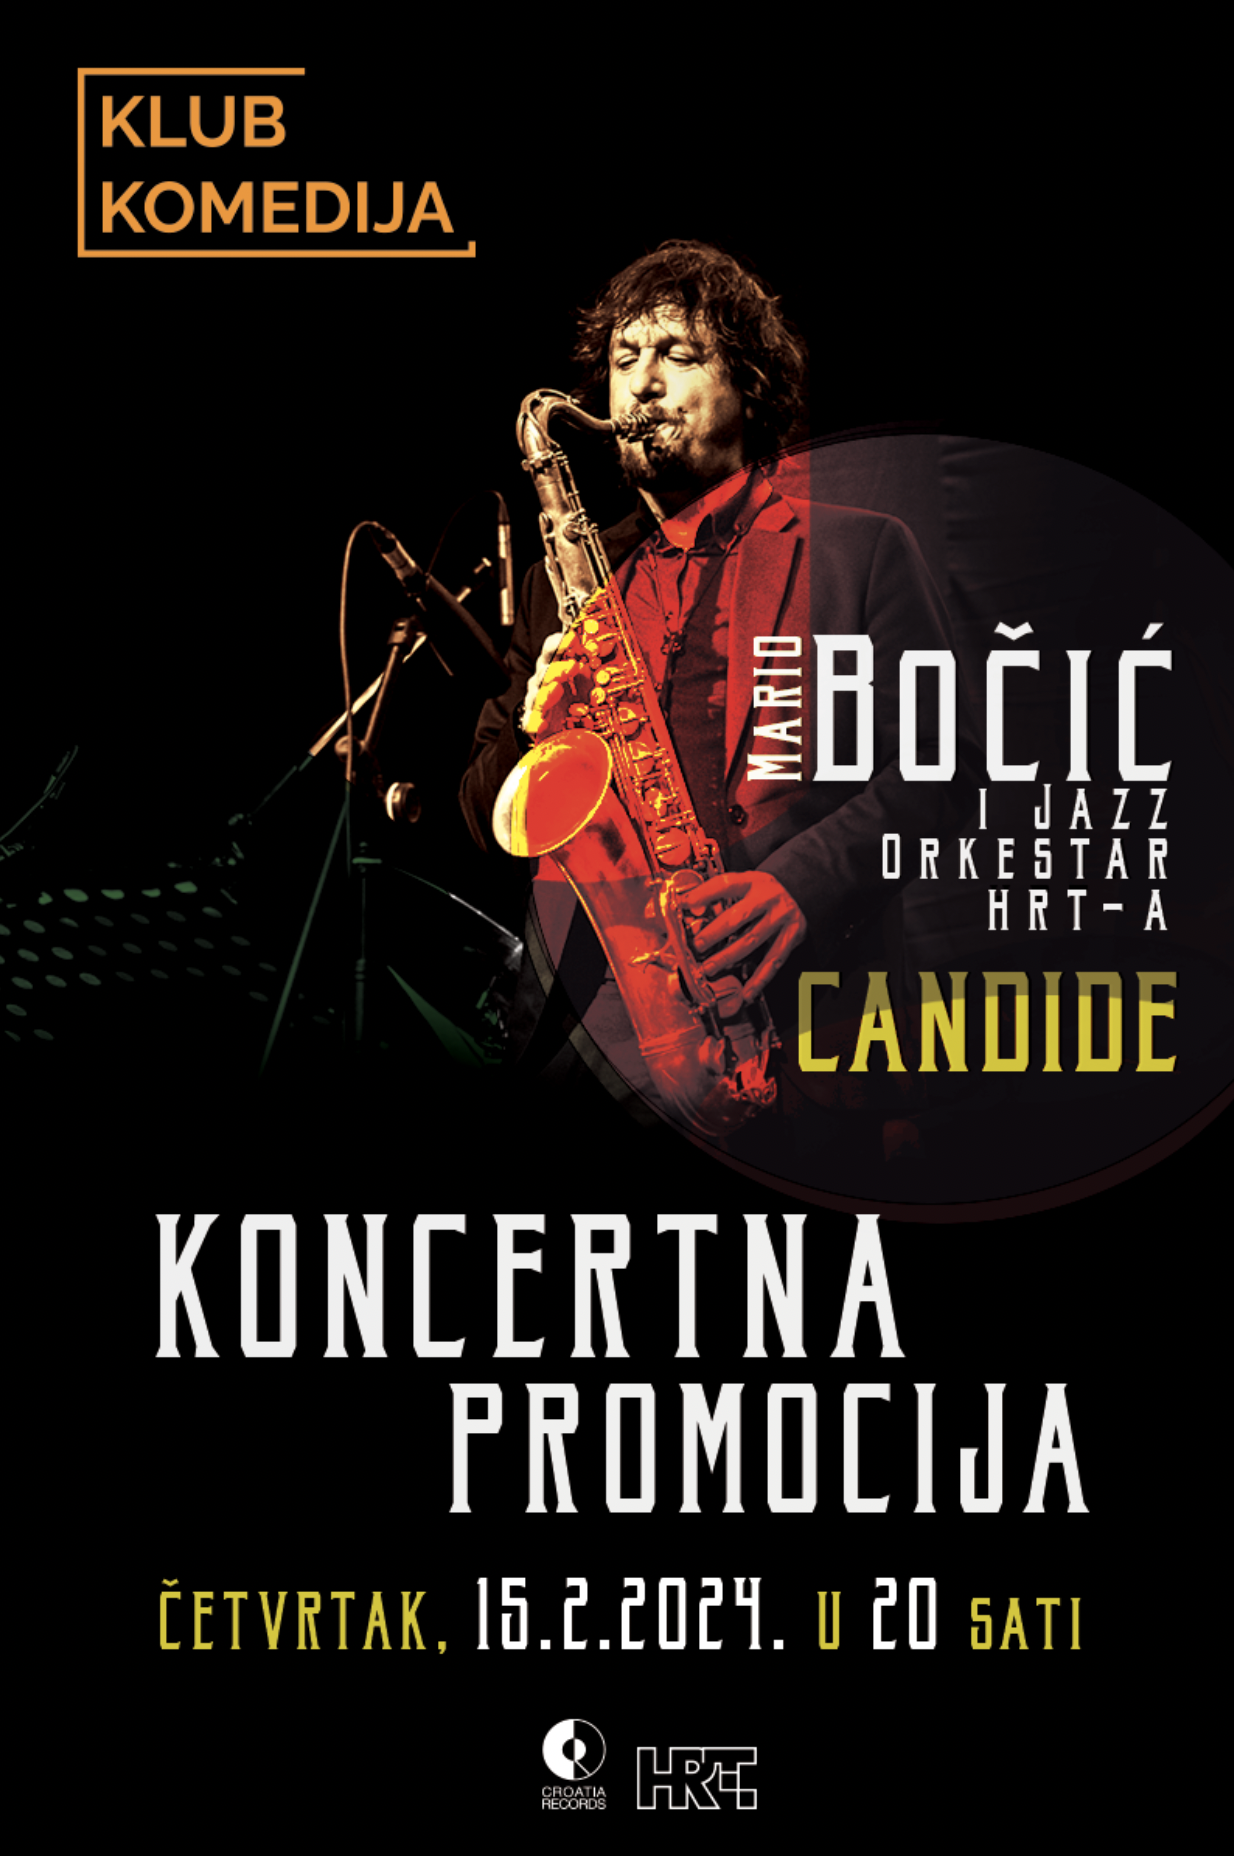 Mario Bočić i Jazz orkestar HRT-a najavili koncertnu promociju albuma “Candide”